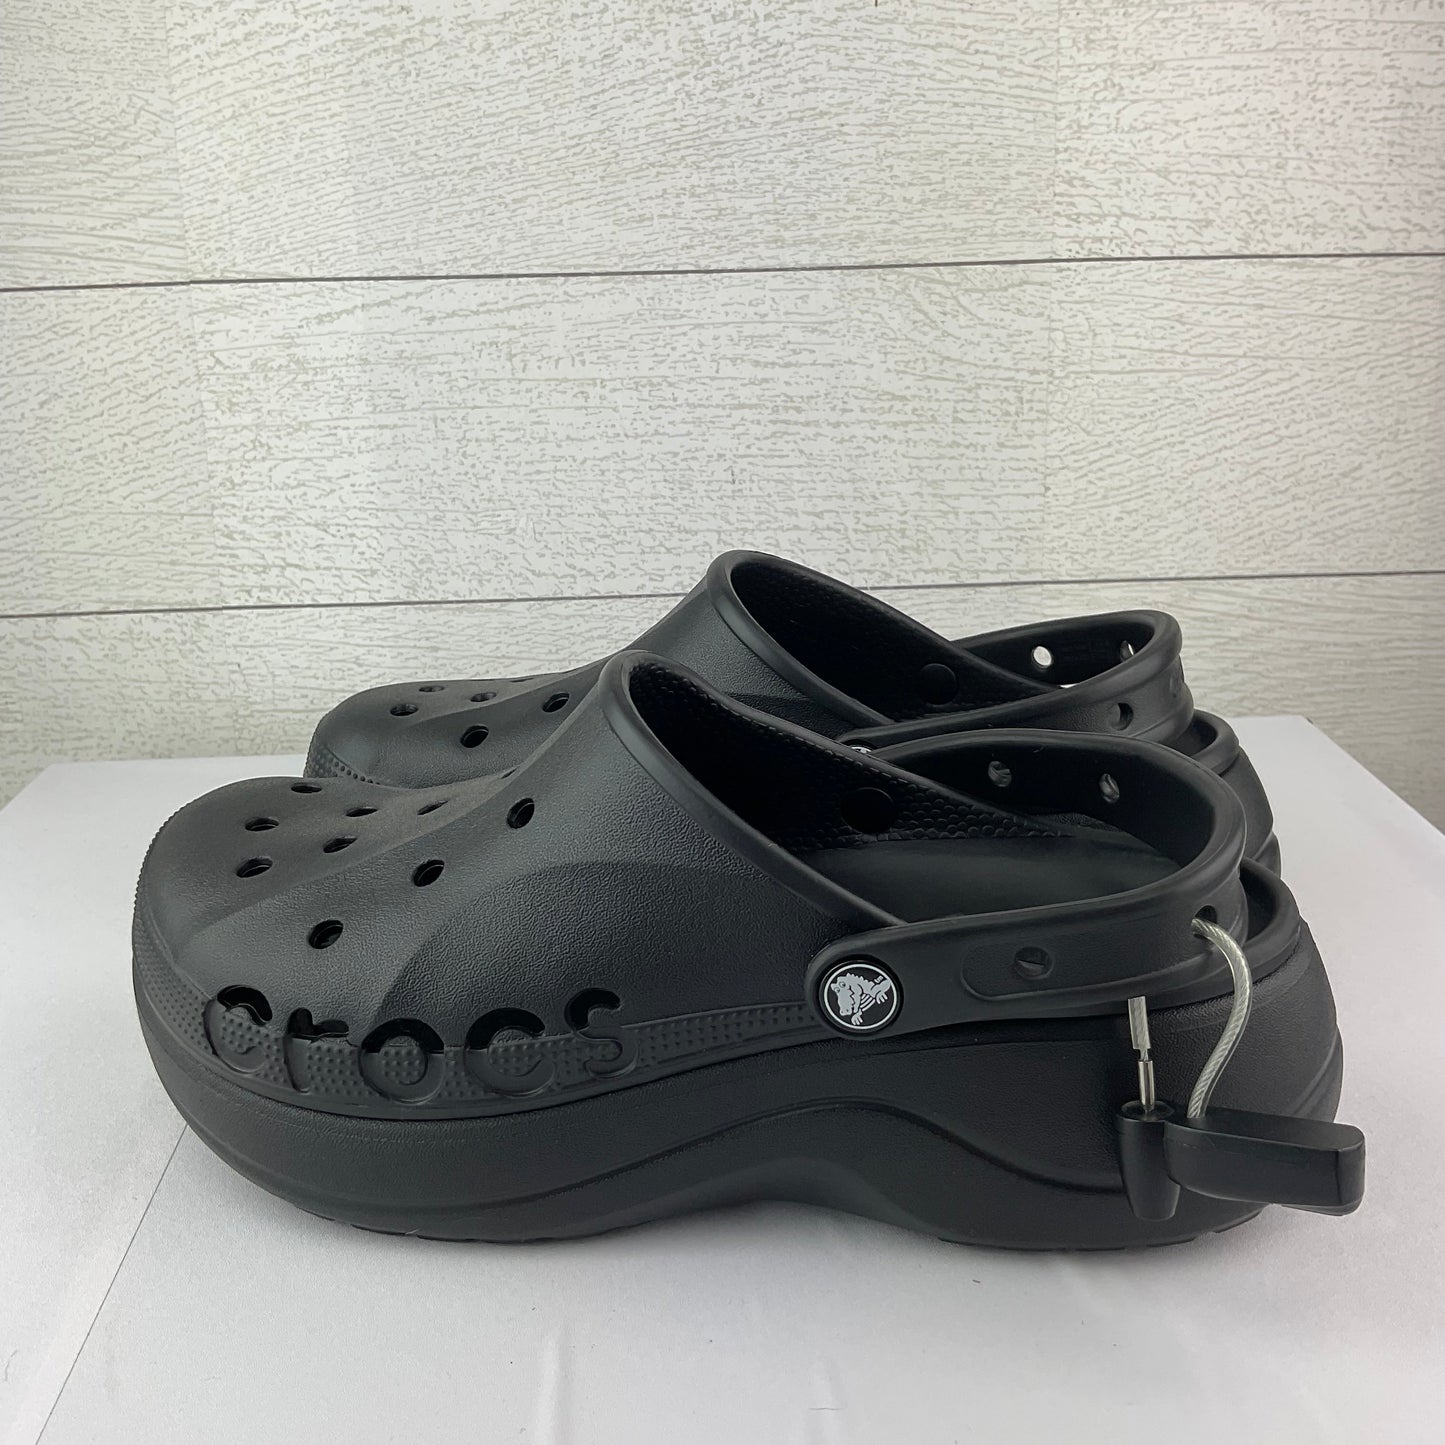 Black Sandals Flats Crocs, Size 9